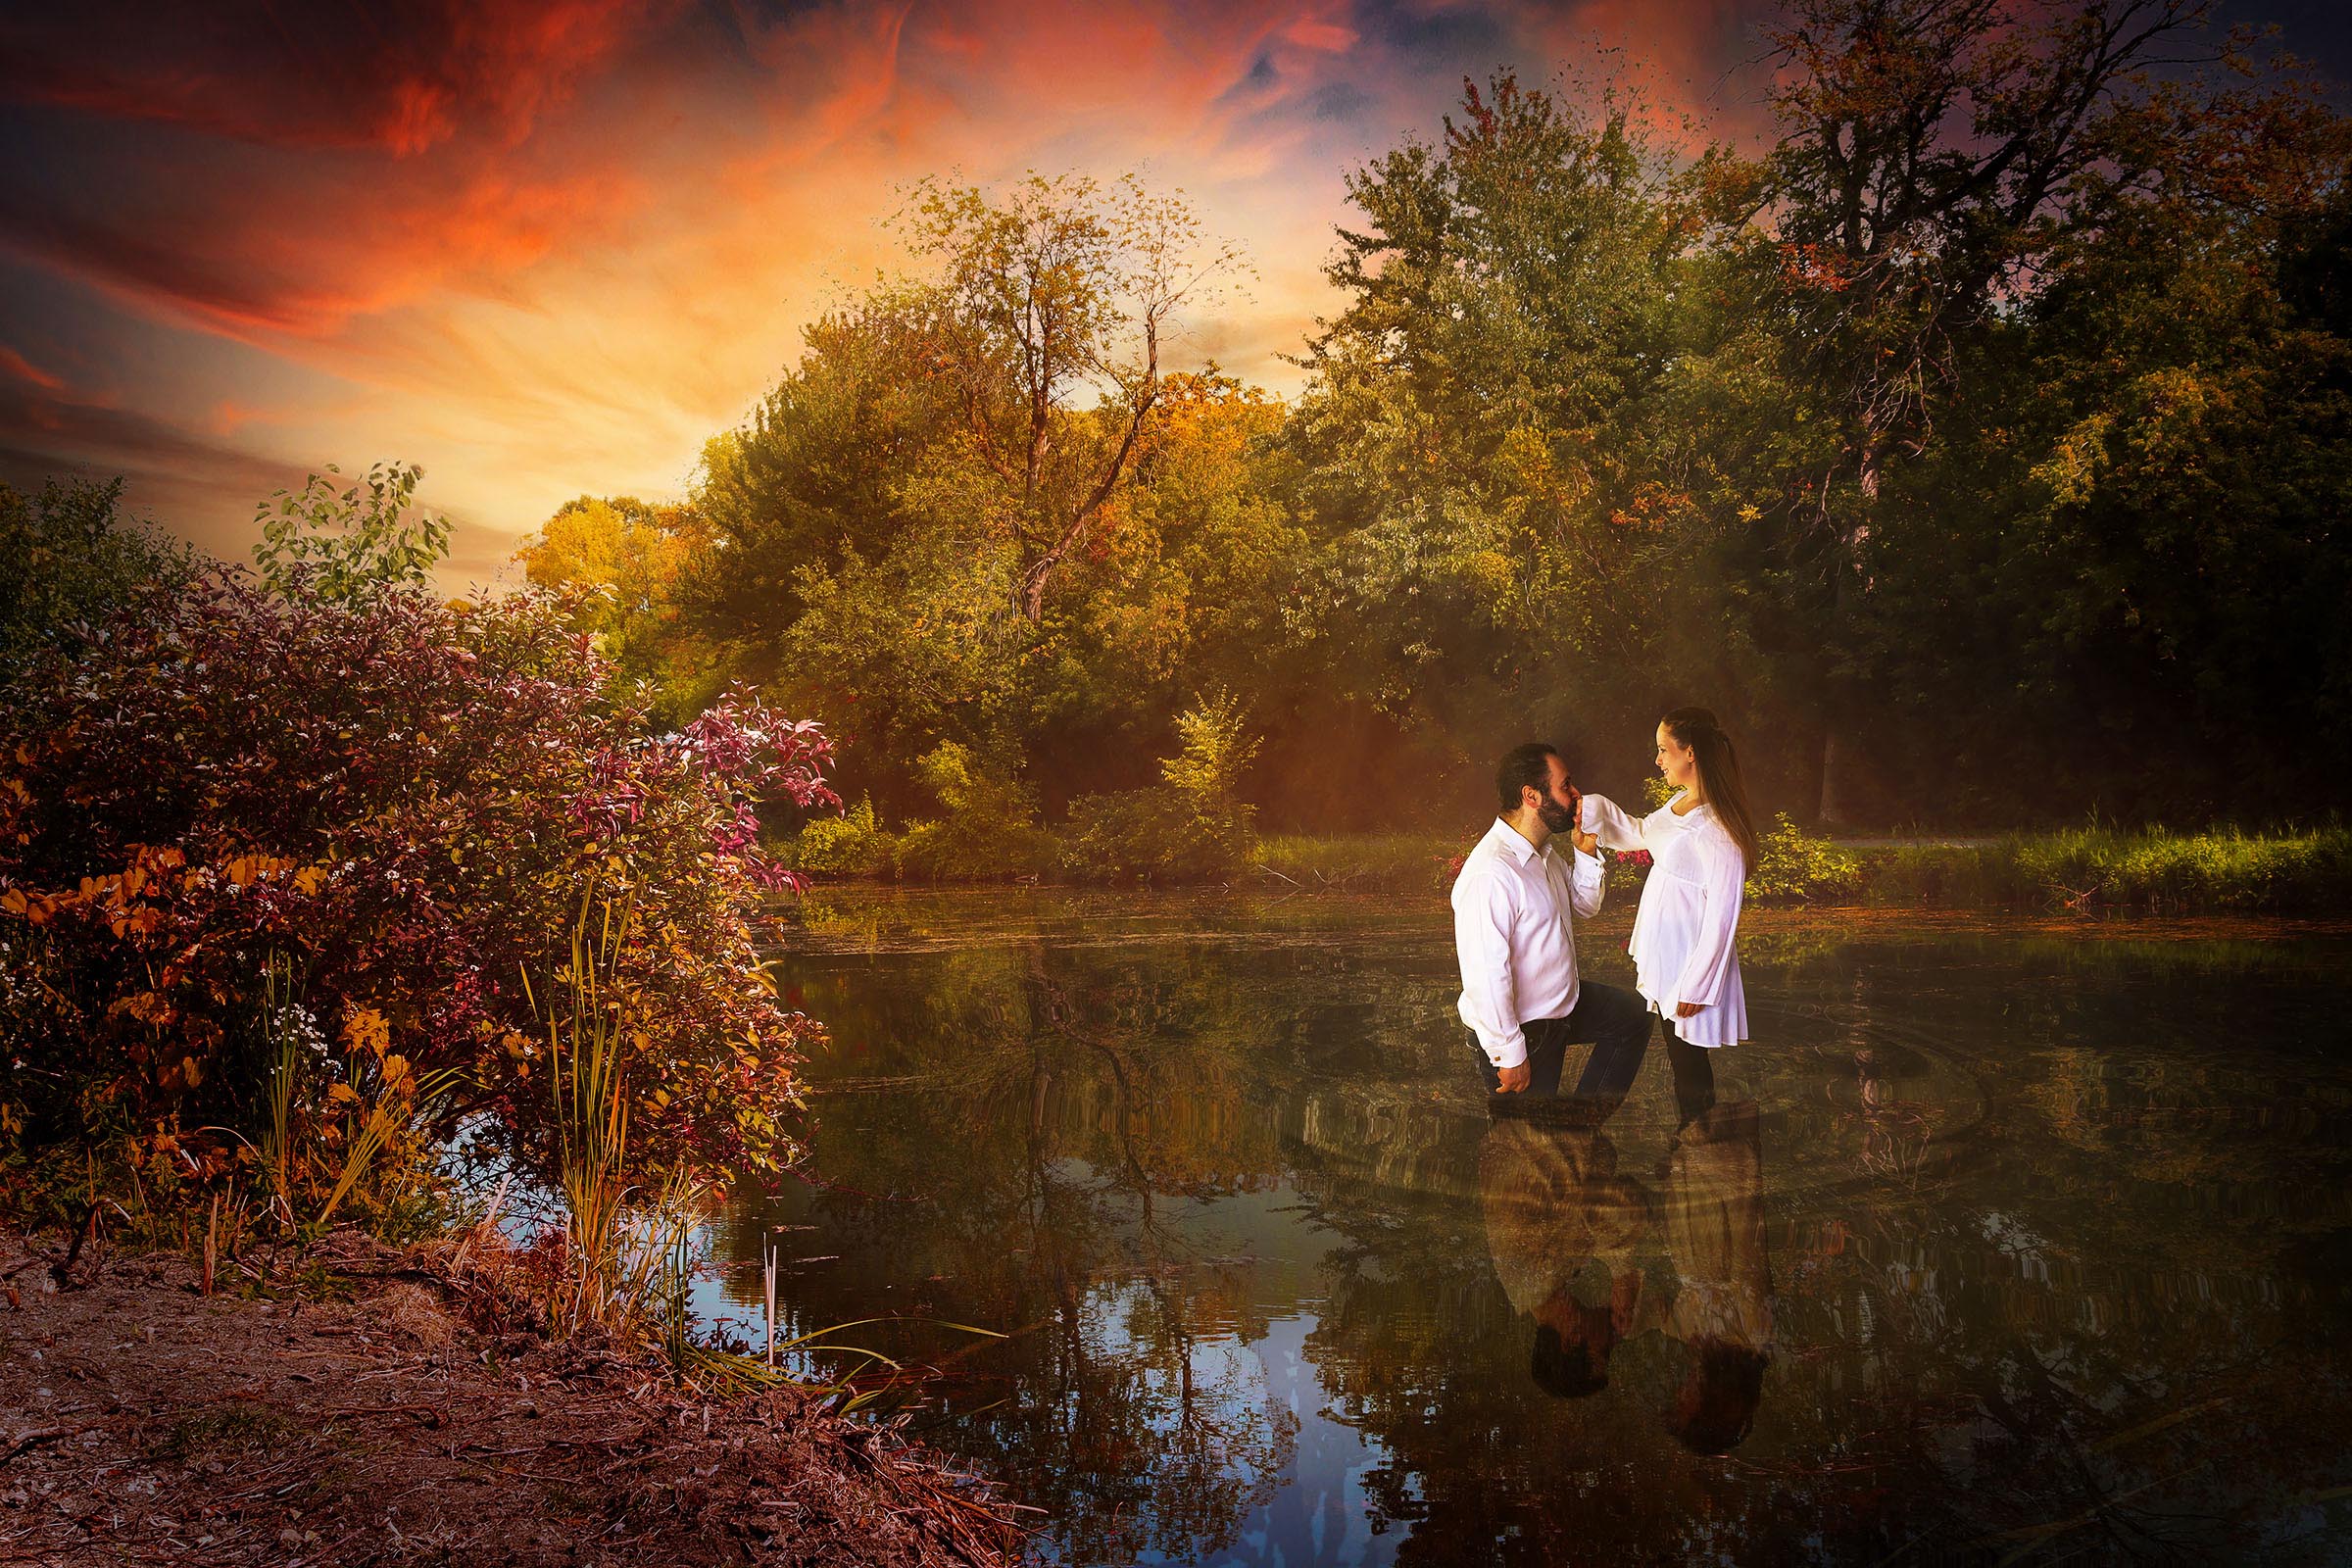 Composite couple femme homme debout dans l'eau mâle agenouillé et embrassant la main féminine arbres colorés et reflet du couple dans l'eau par Tobi Malette photographe Vaudreuil-Soulanges et ouest de l'ile de montreal